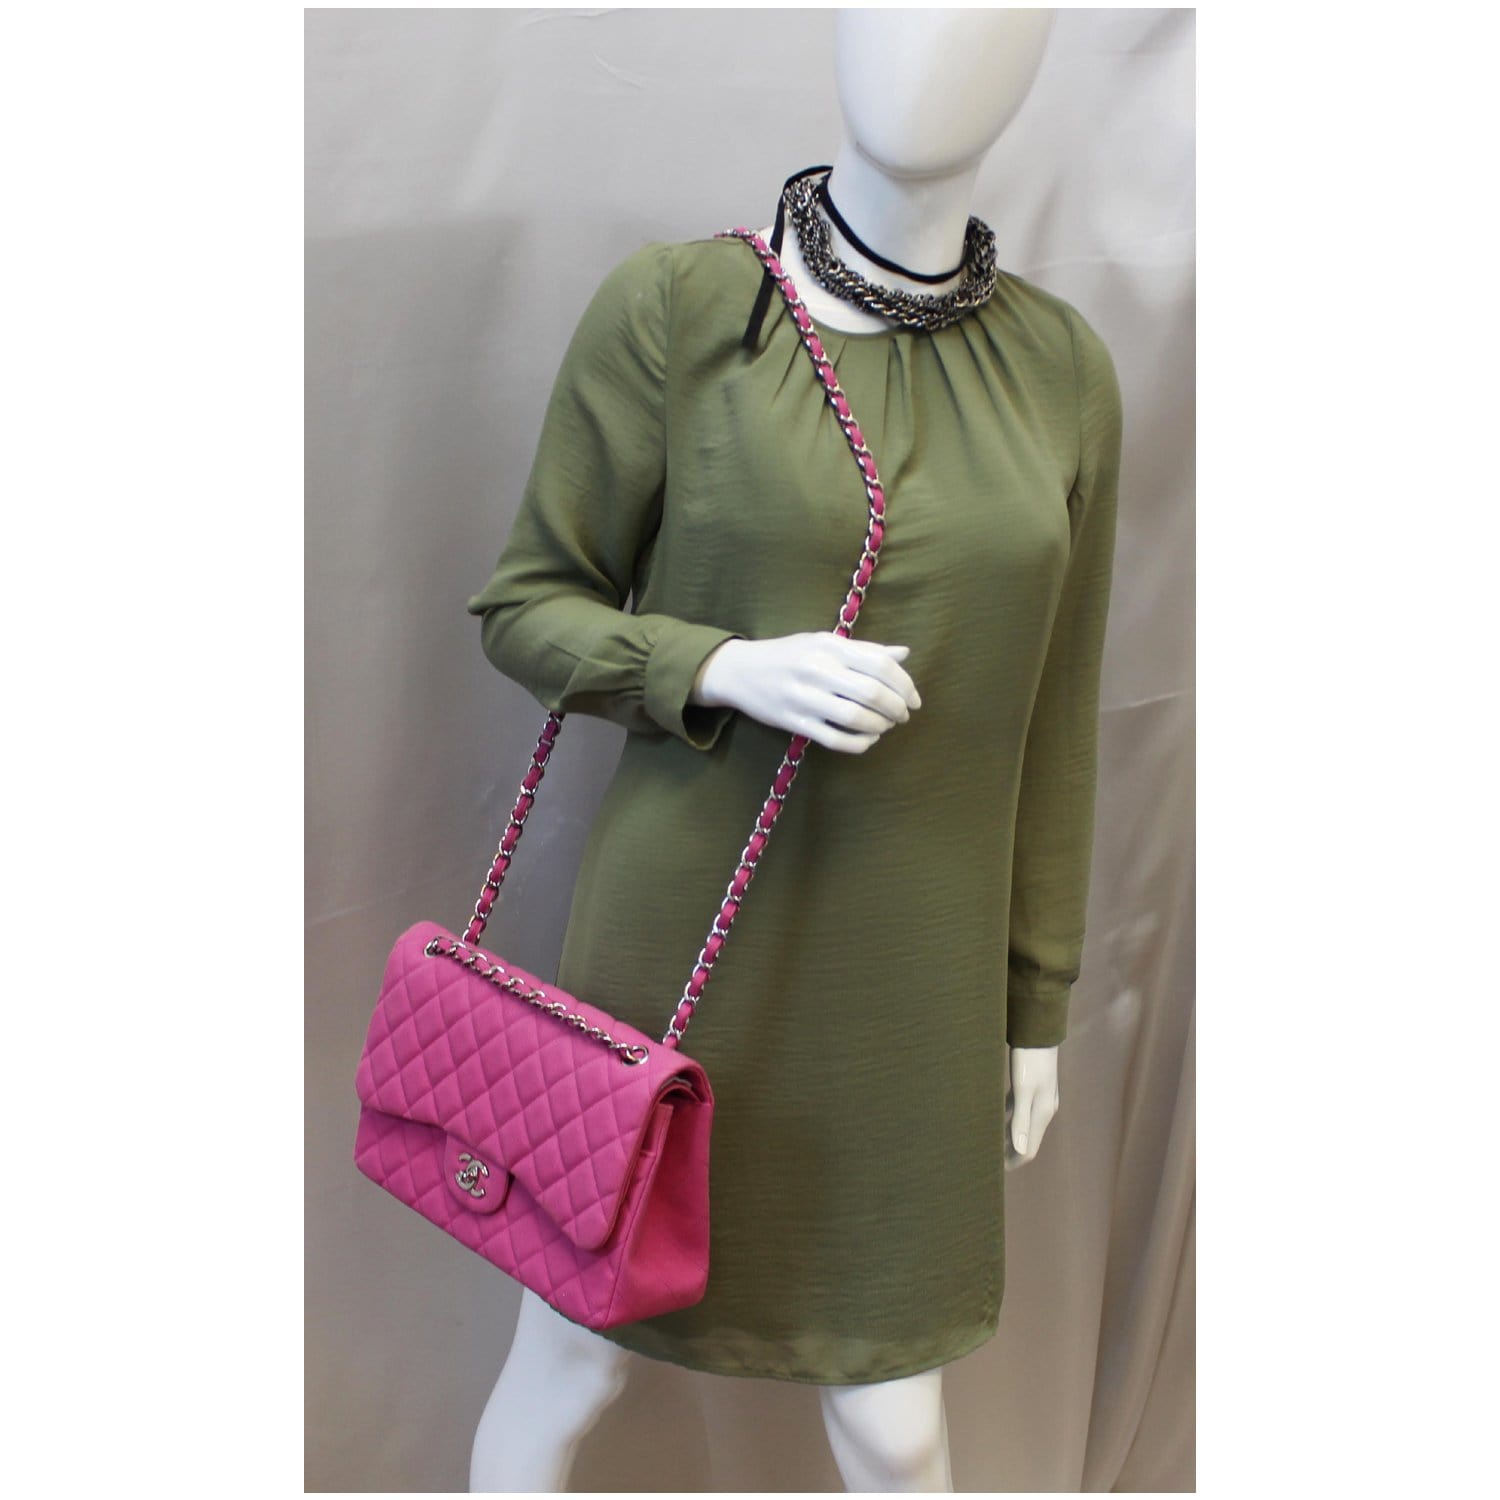 Hot Pink Handbag - 48 For Sale on 1stDibs  hot pink purse, bright pink  handbag, neon pink handbag